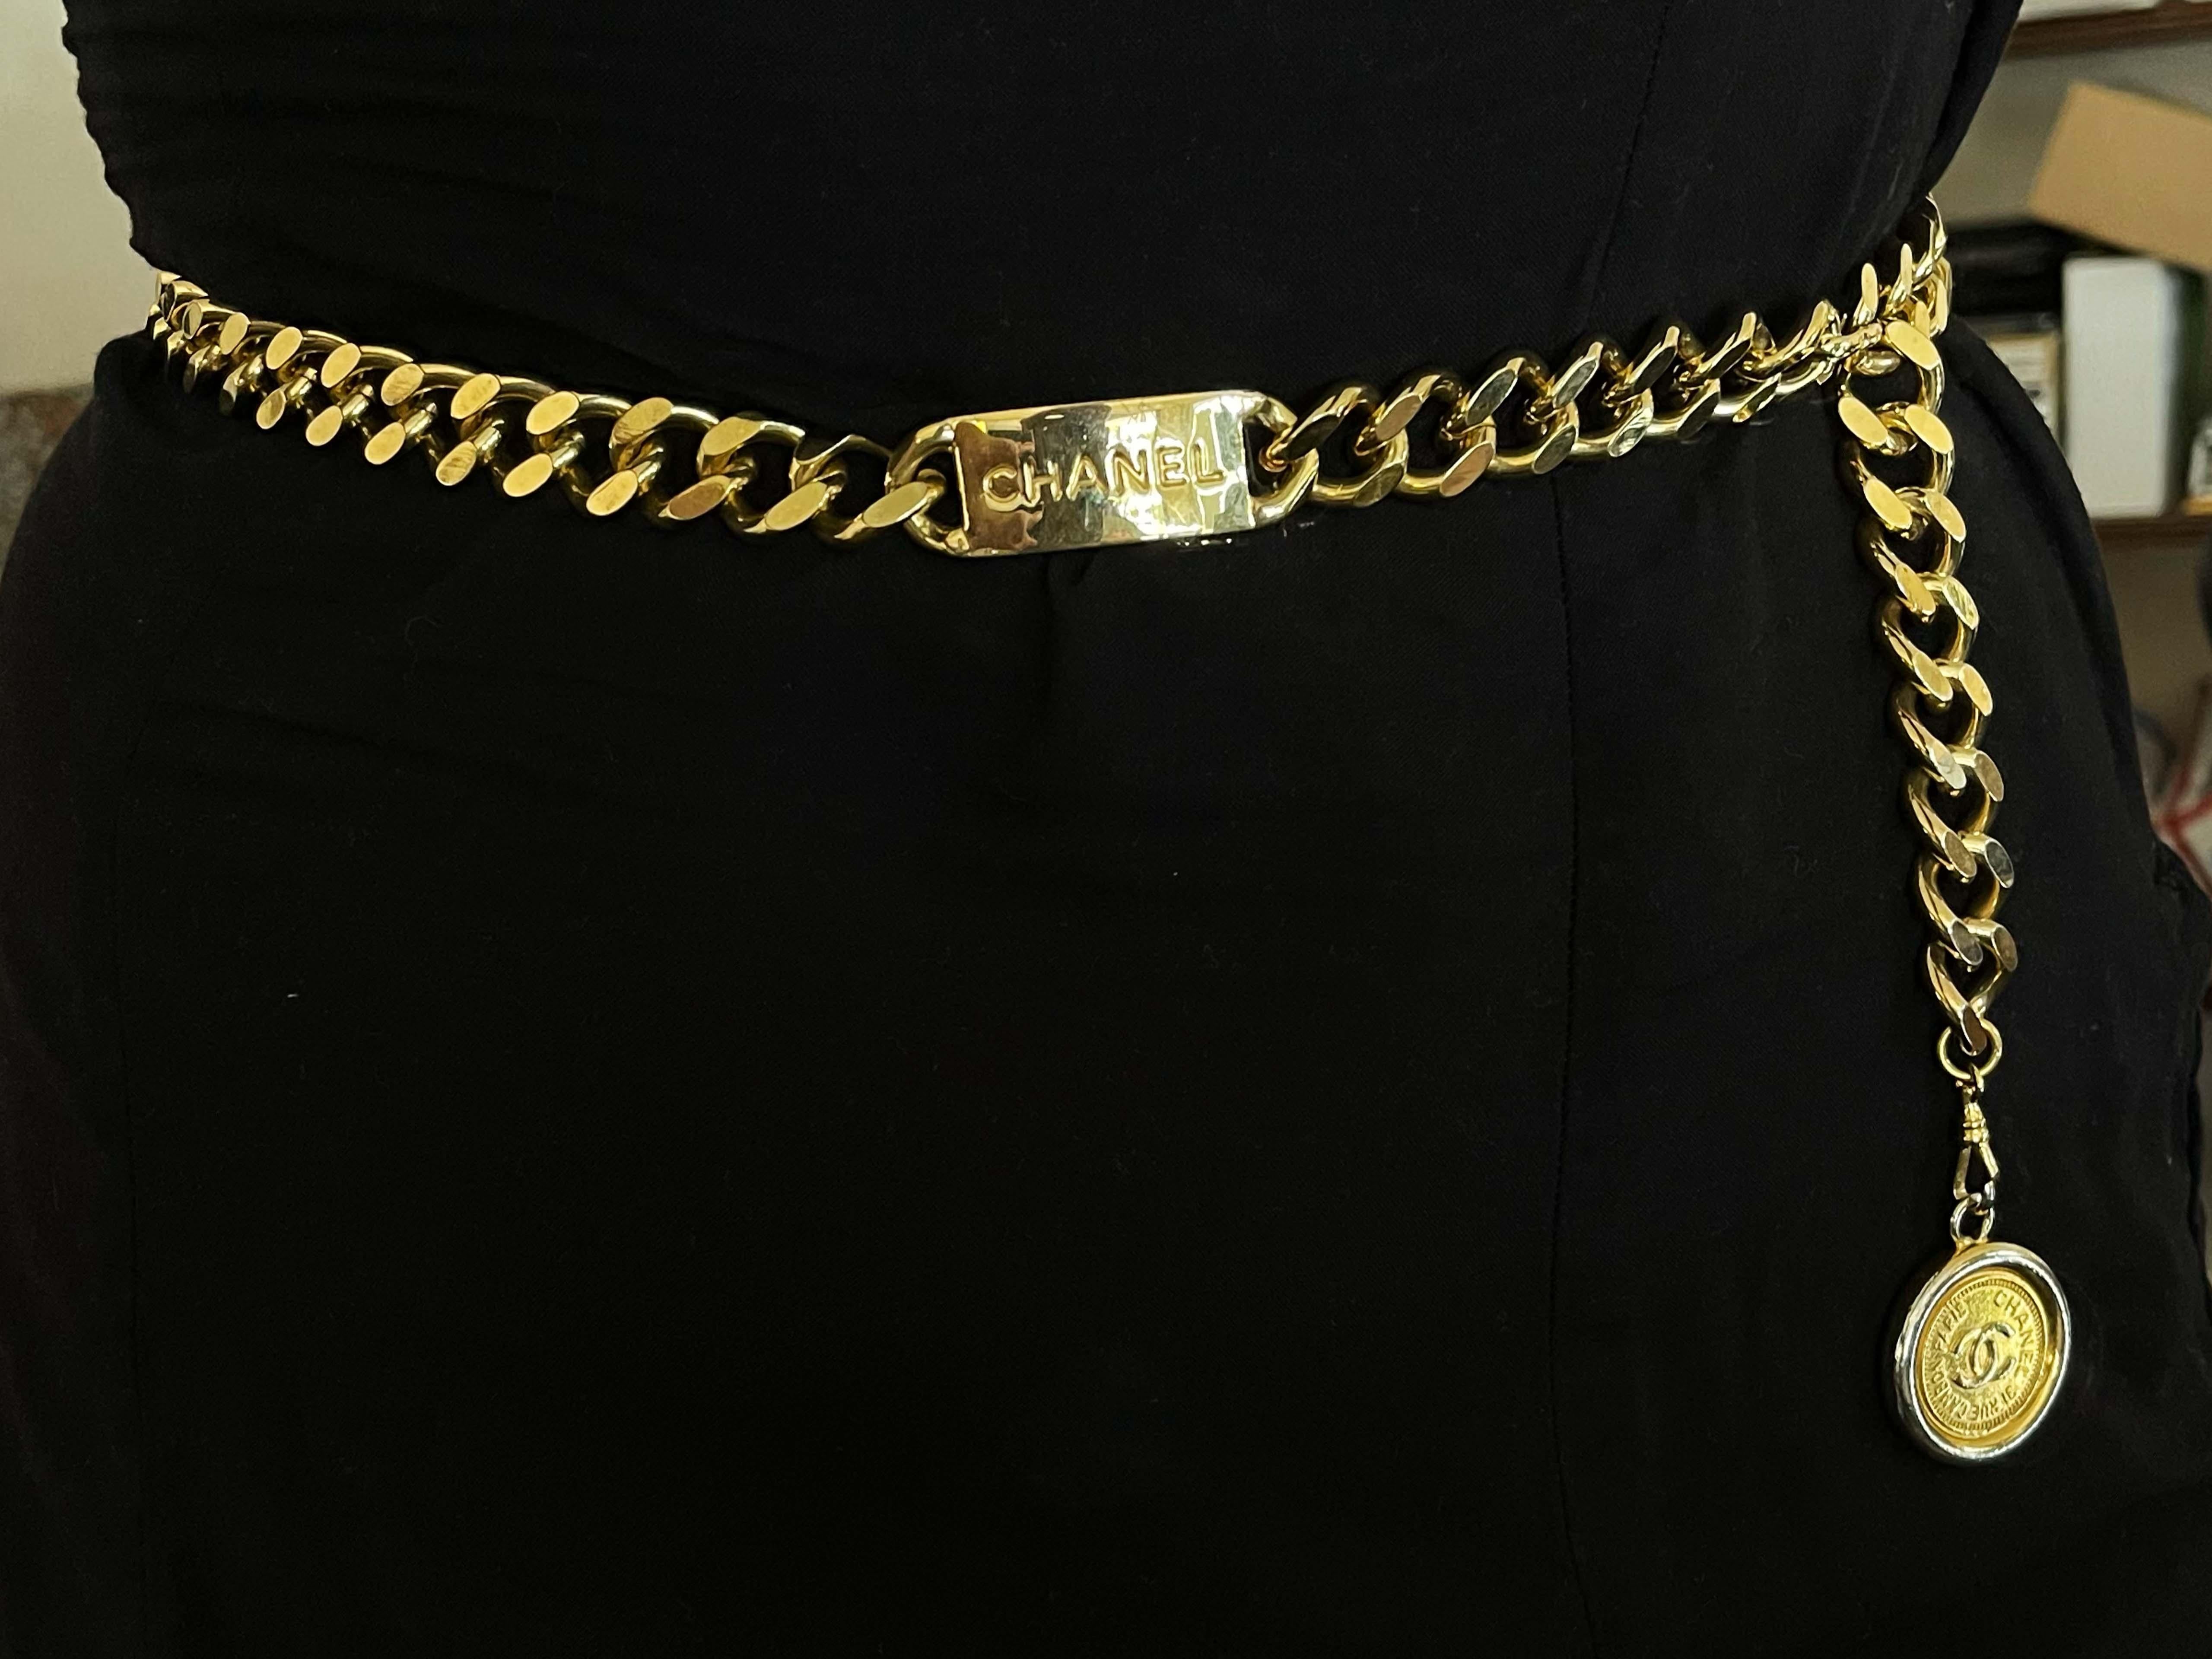 Classique et chic, cette ceinture chaîne vintage Chanel est réalisée en métal doré et rehaussée d'un pendentif médaillon gravé du logo 'CC'. La fermeture peut être accrochée à plusieurs maillons pour une variété d'ajustements.

Broche Spécifications